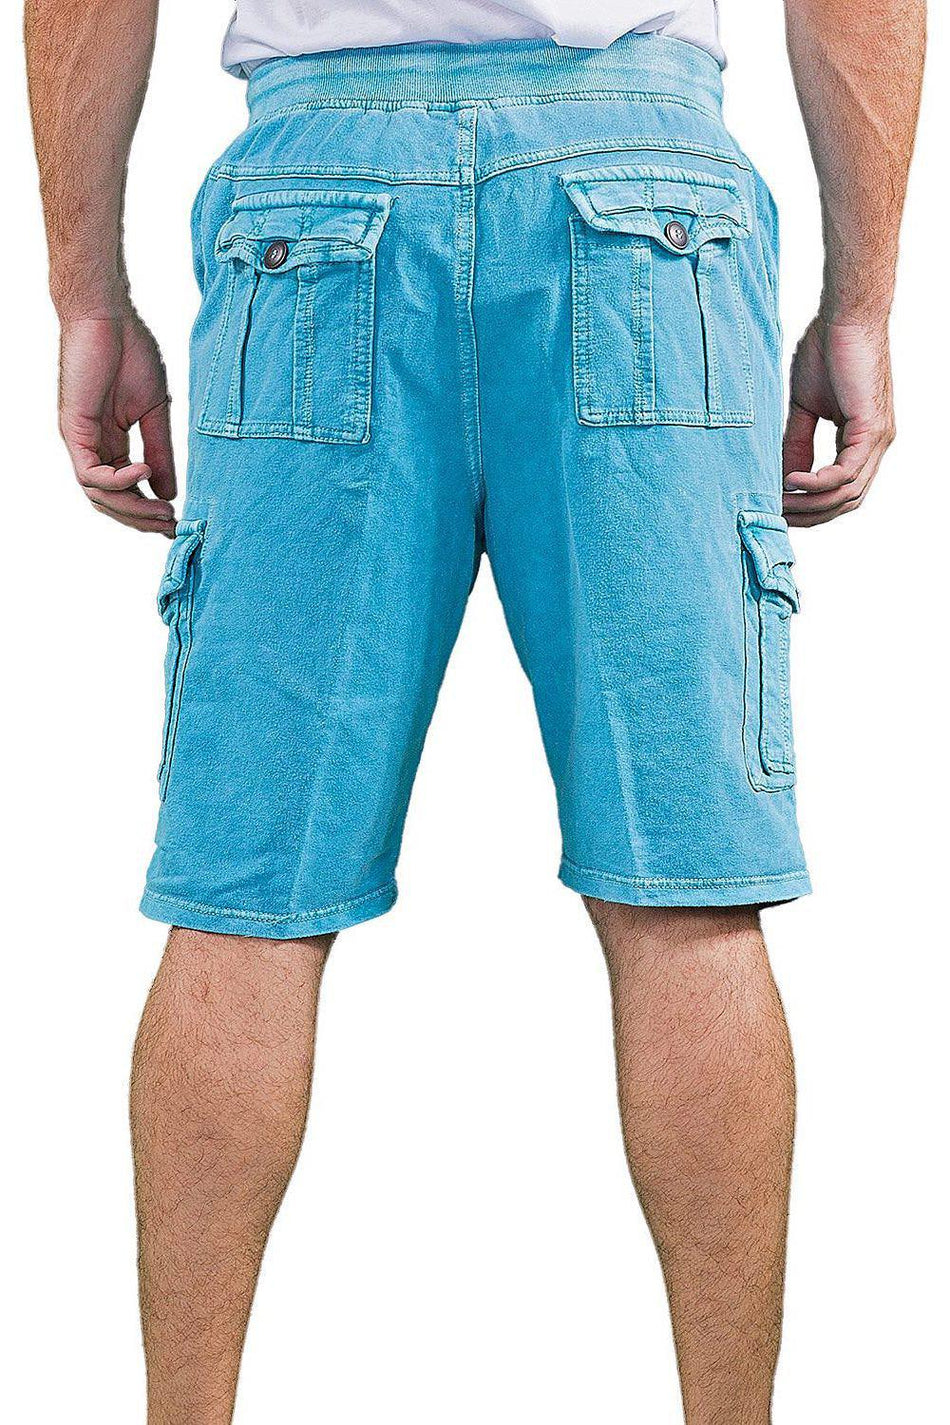 BESPOKE SPORT - 163101 - Turquoise Drawstring Cargo Shorts for Men - www.bespokemoda.com